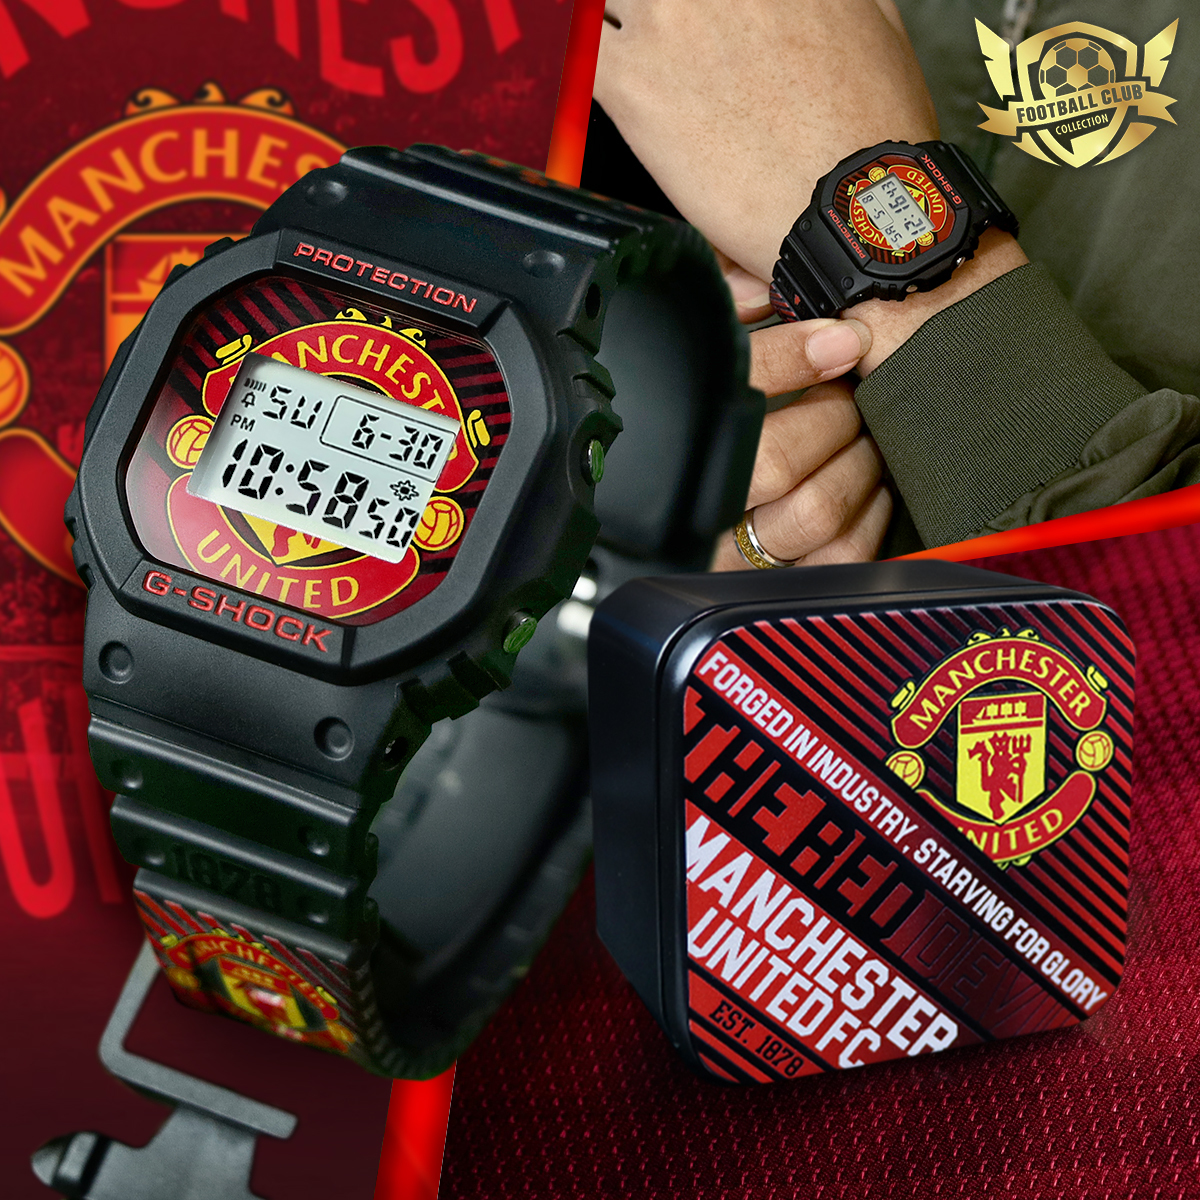 Man United (Premier League) Football Club DW-5600 G-Shock Watch